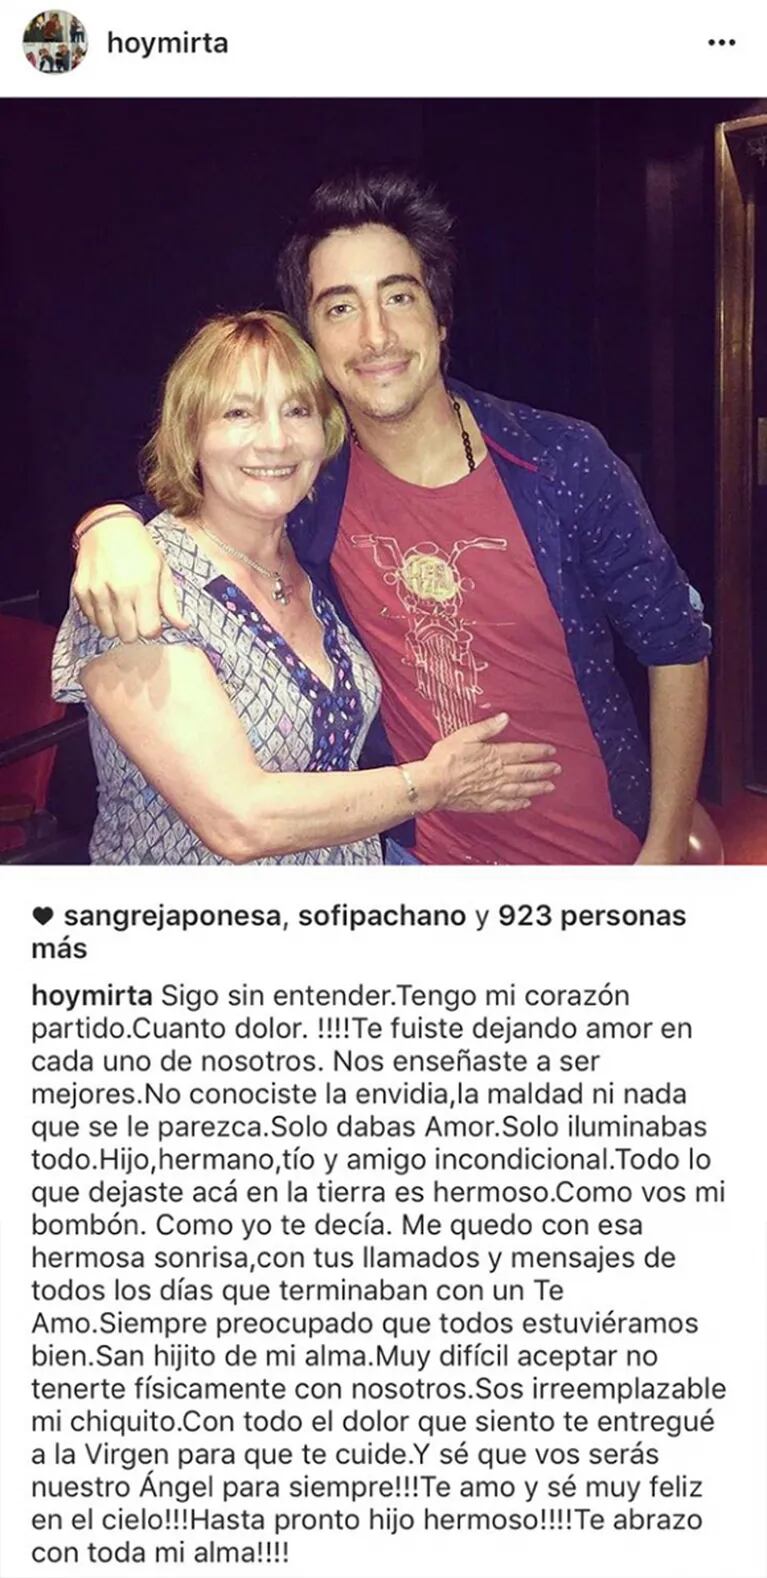 La desgarradora carta de despedida de la mamá de Santi Vázquez: "Mi chiquito, ¡sé que serás nuestro ángel para siempre!"